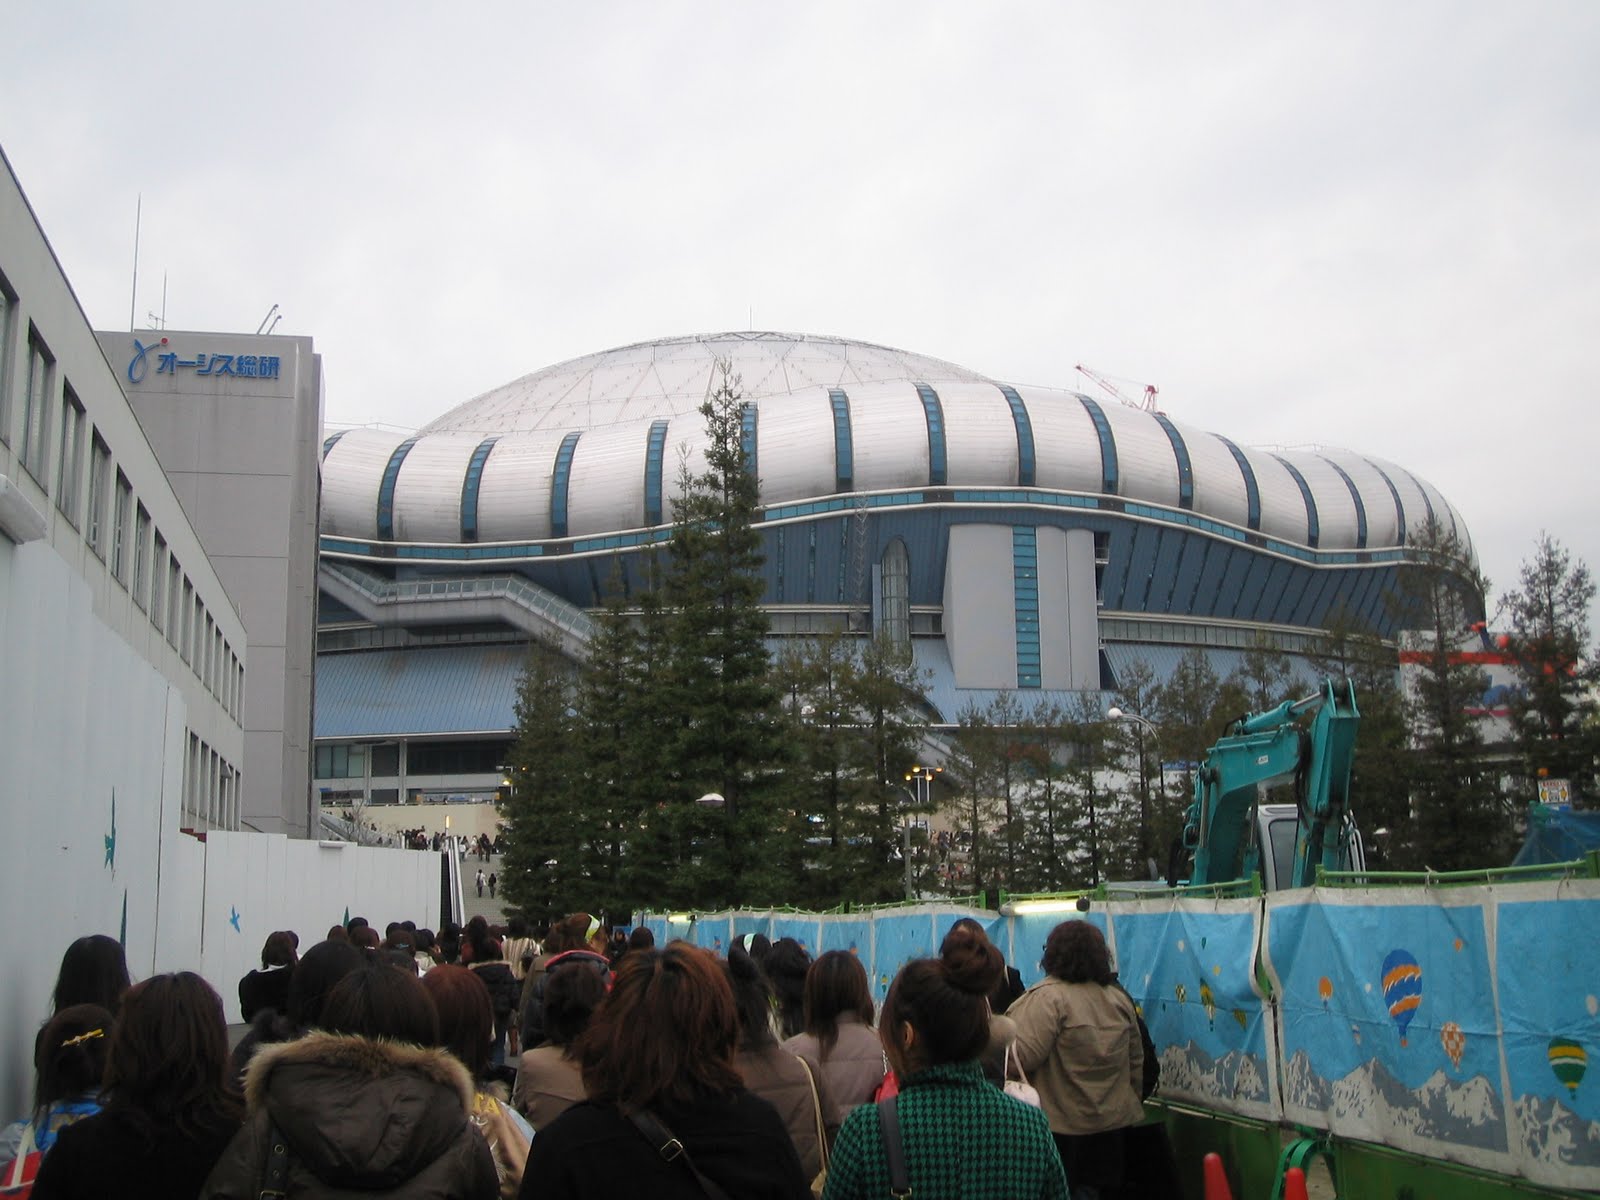 Fukuoka Yahoo Dome Seating Chart